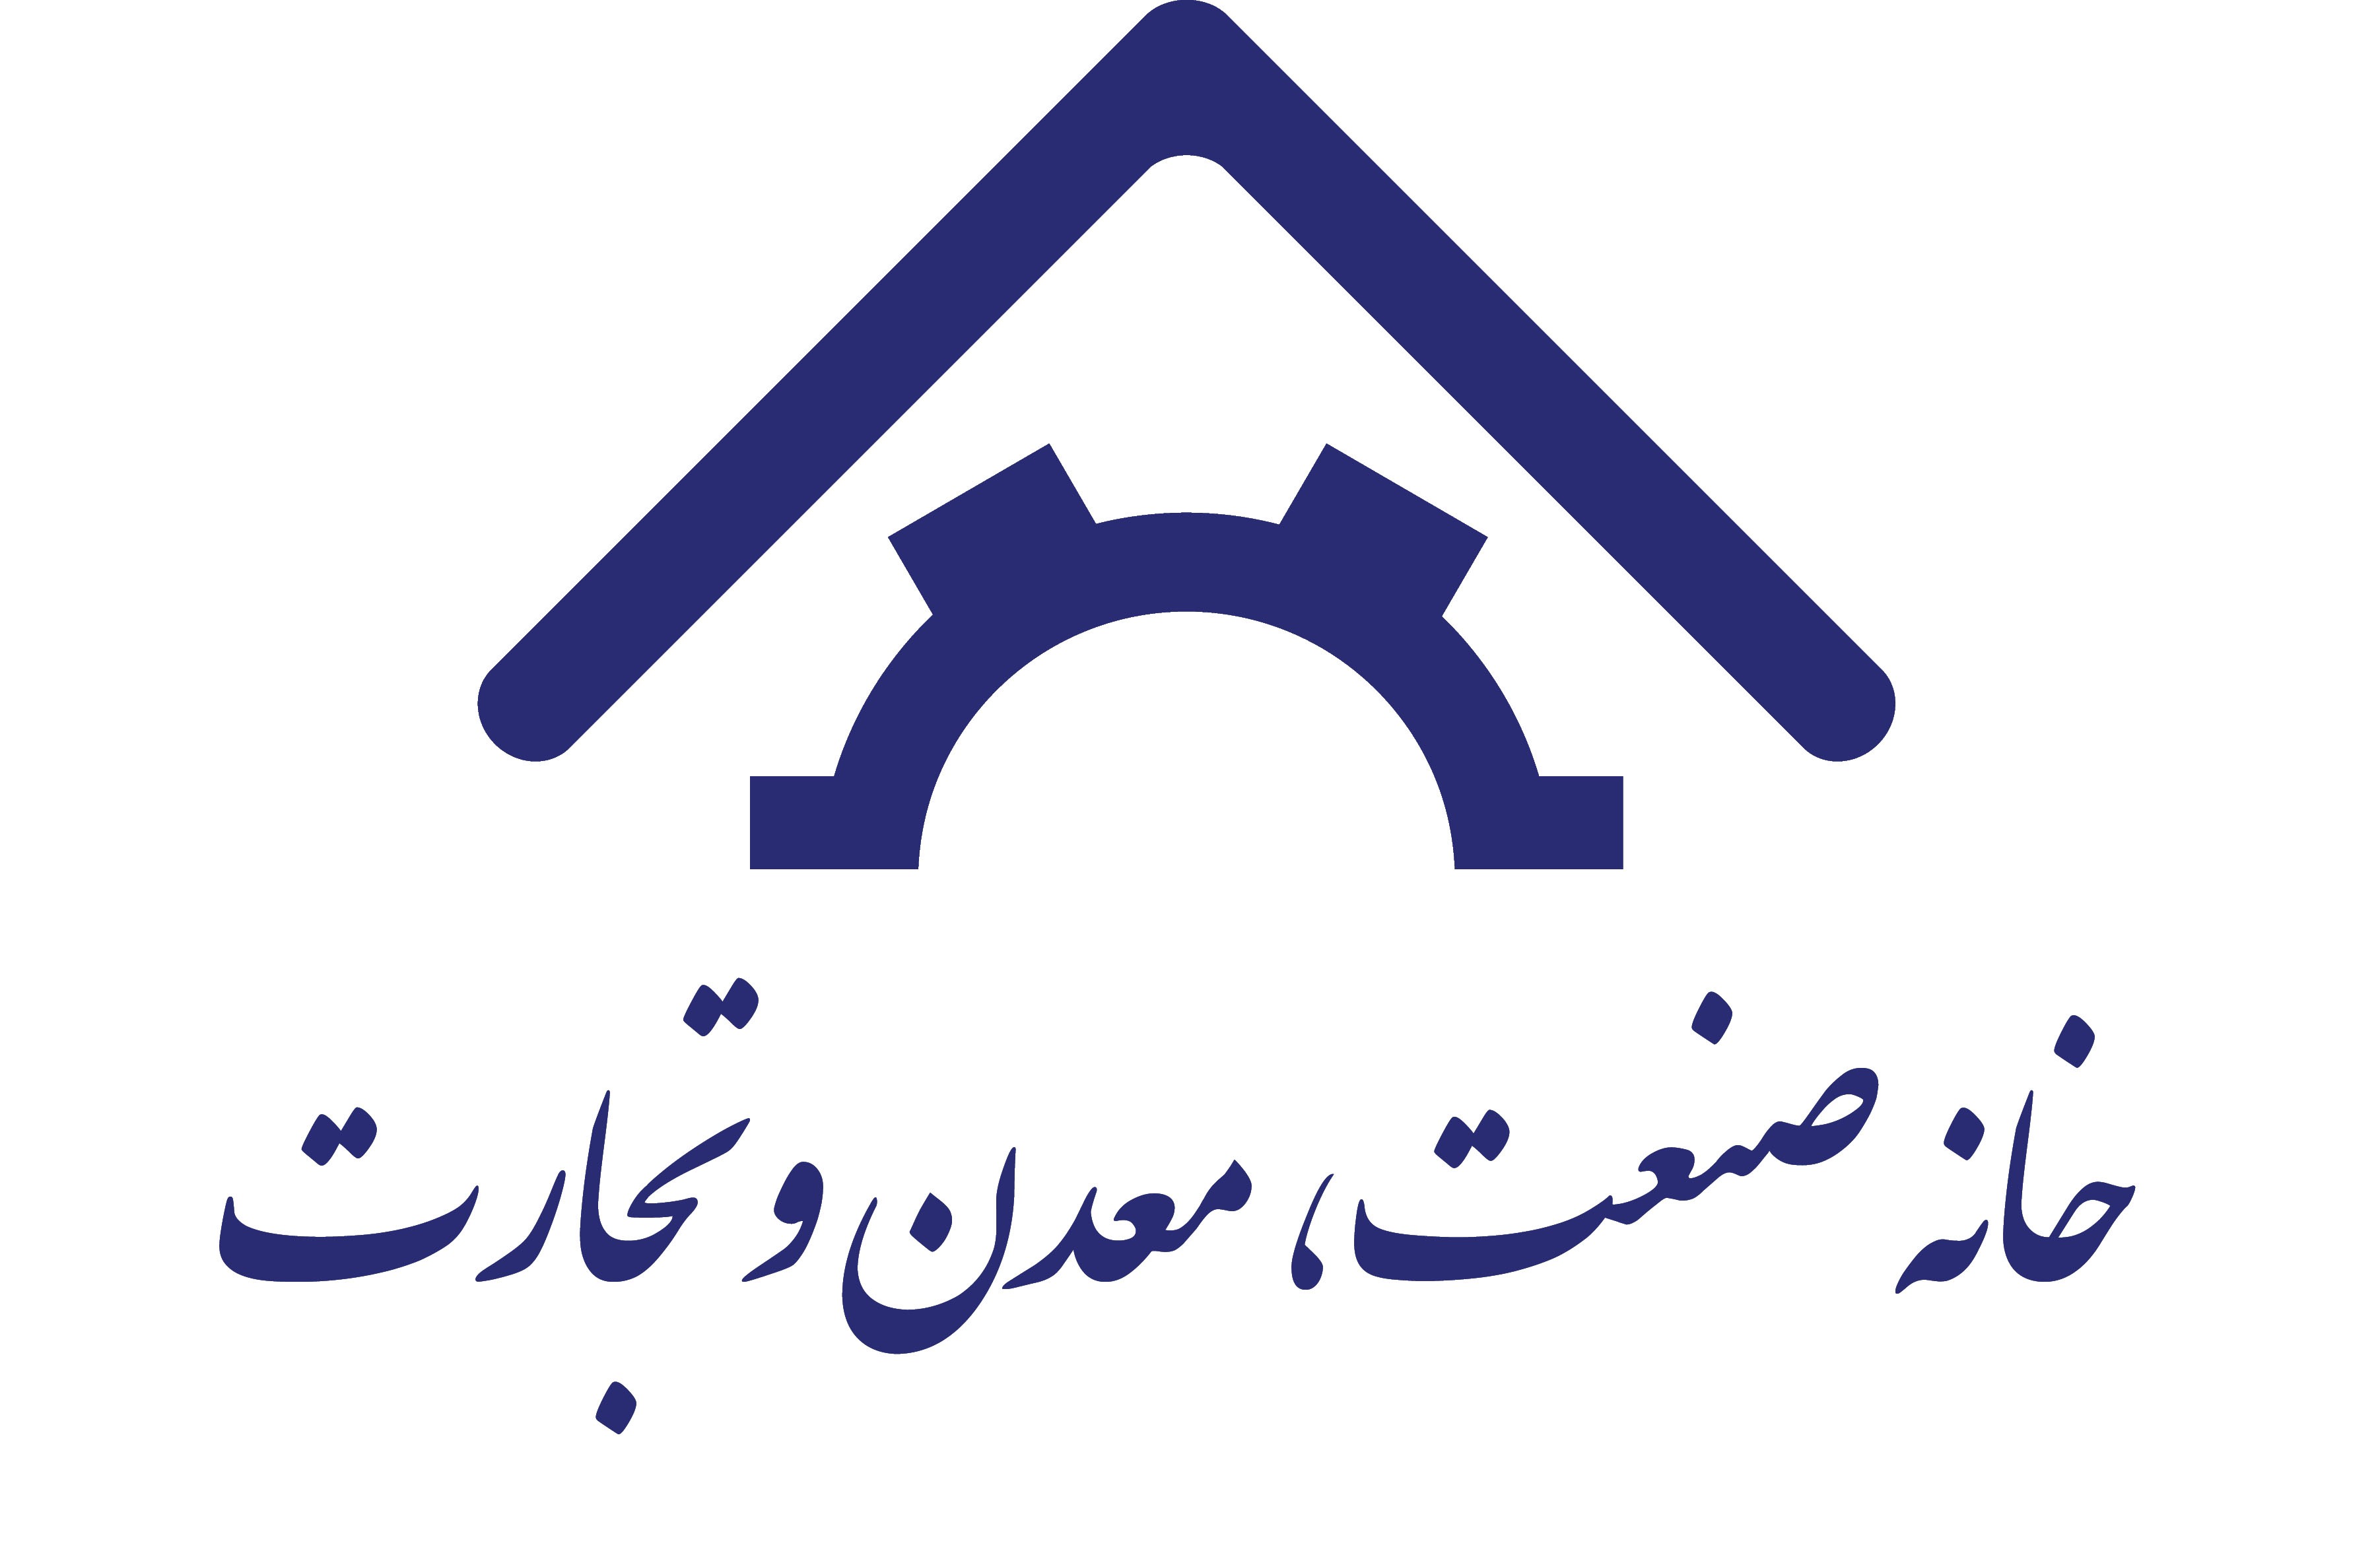 بیانیه خانه صنعت، معدن و تجارت ایران به مناسبت برگزاری انتخابات چهاردهمین دوره ریاست جمهوری